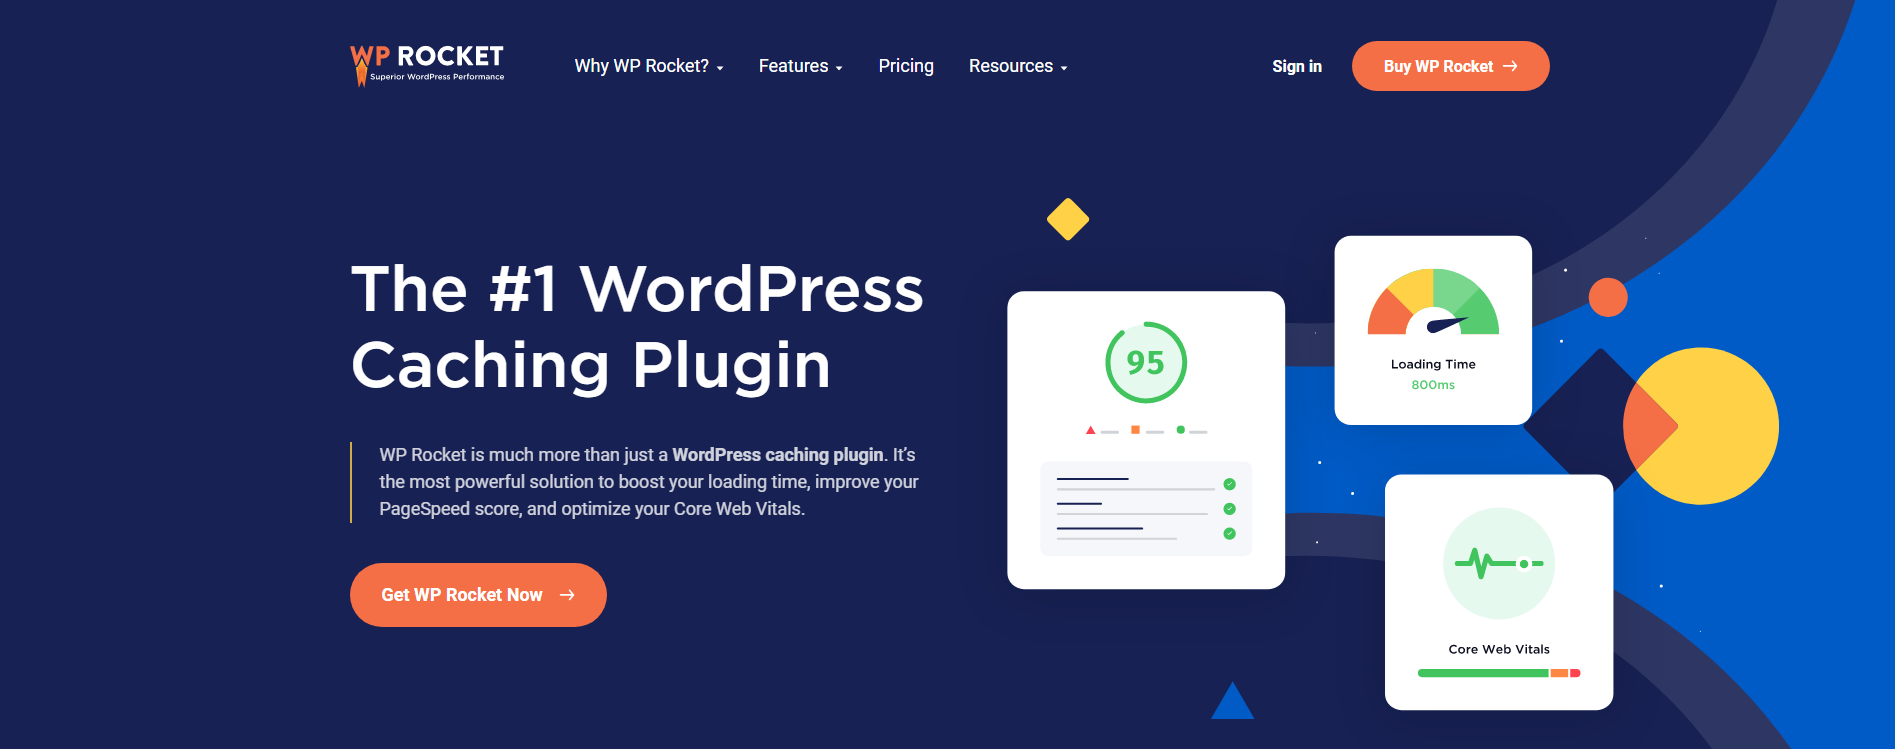 WP Rocket Wordpress Plugins for Blogs